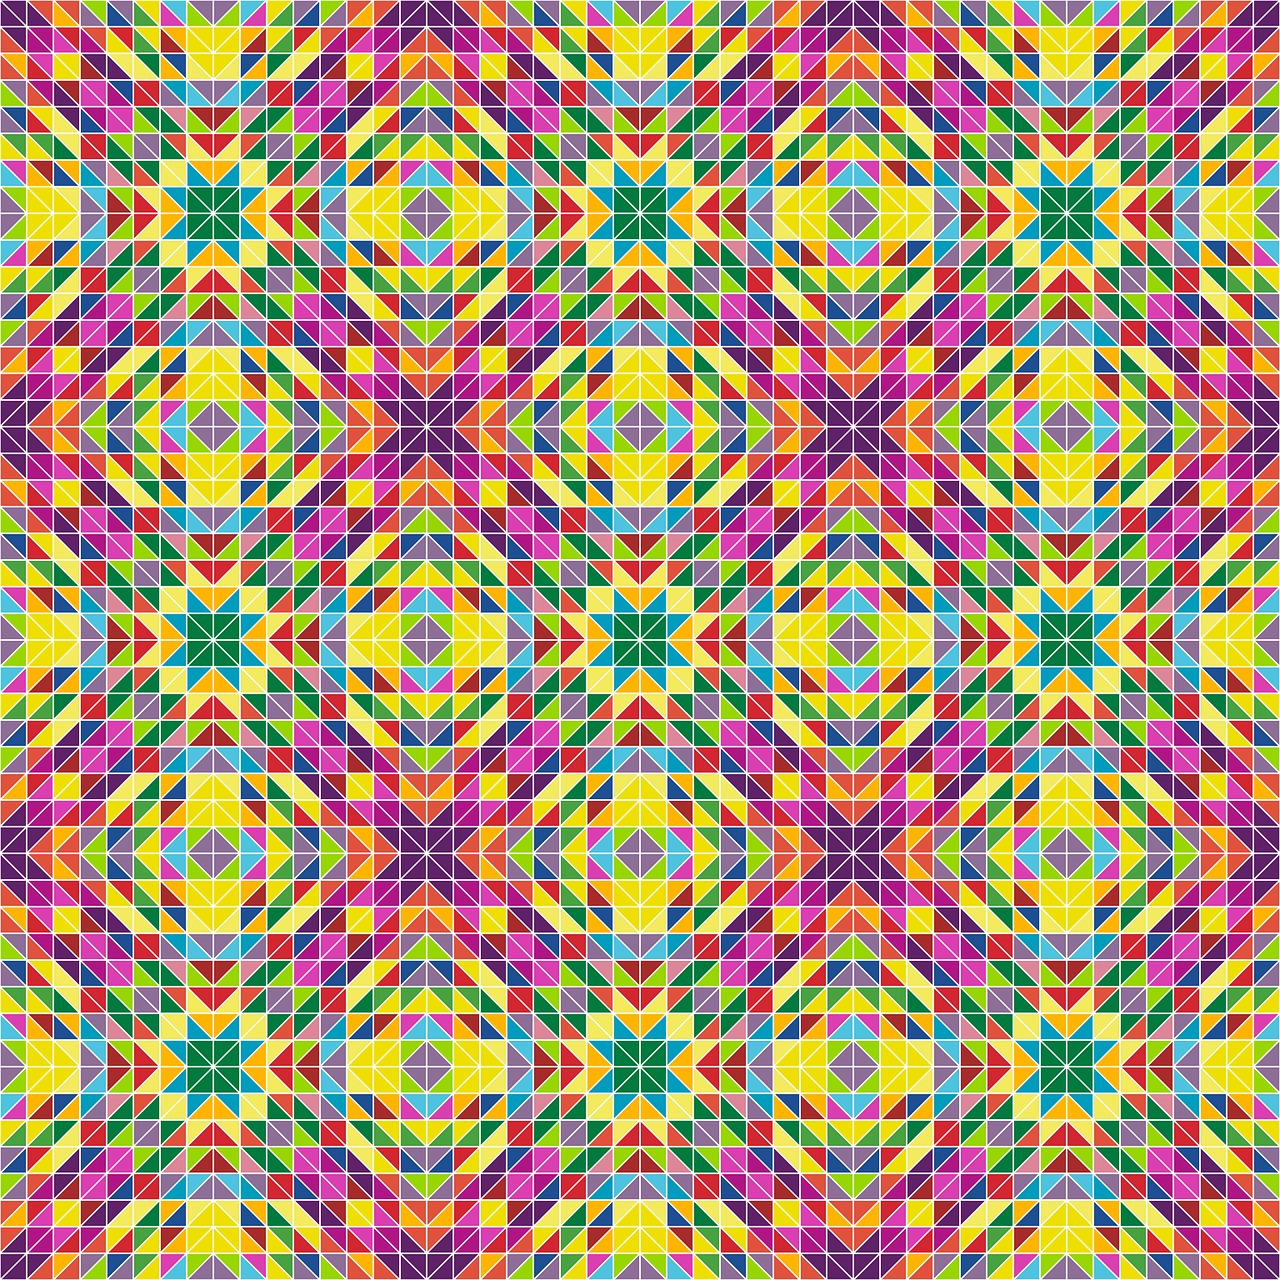 triangle mosaic pattern free photo